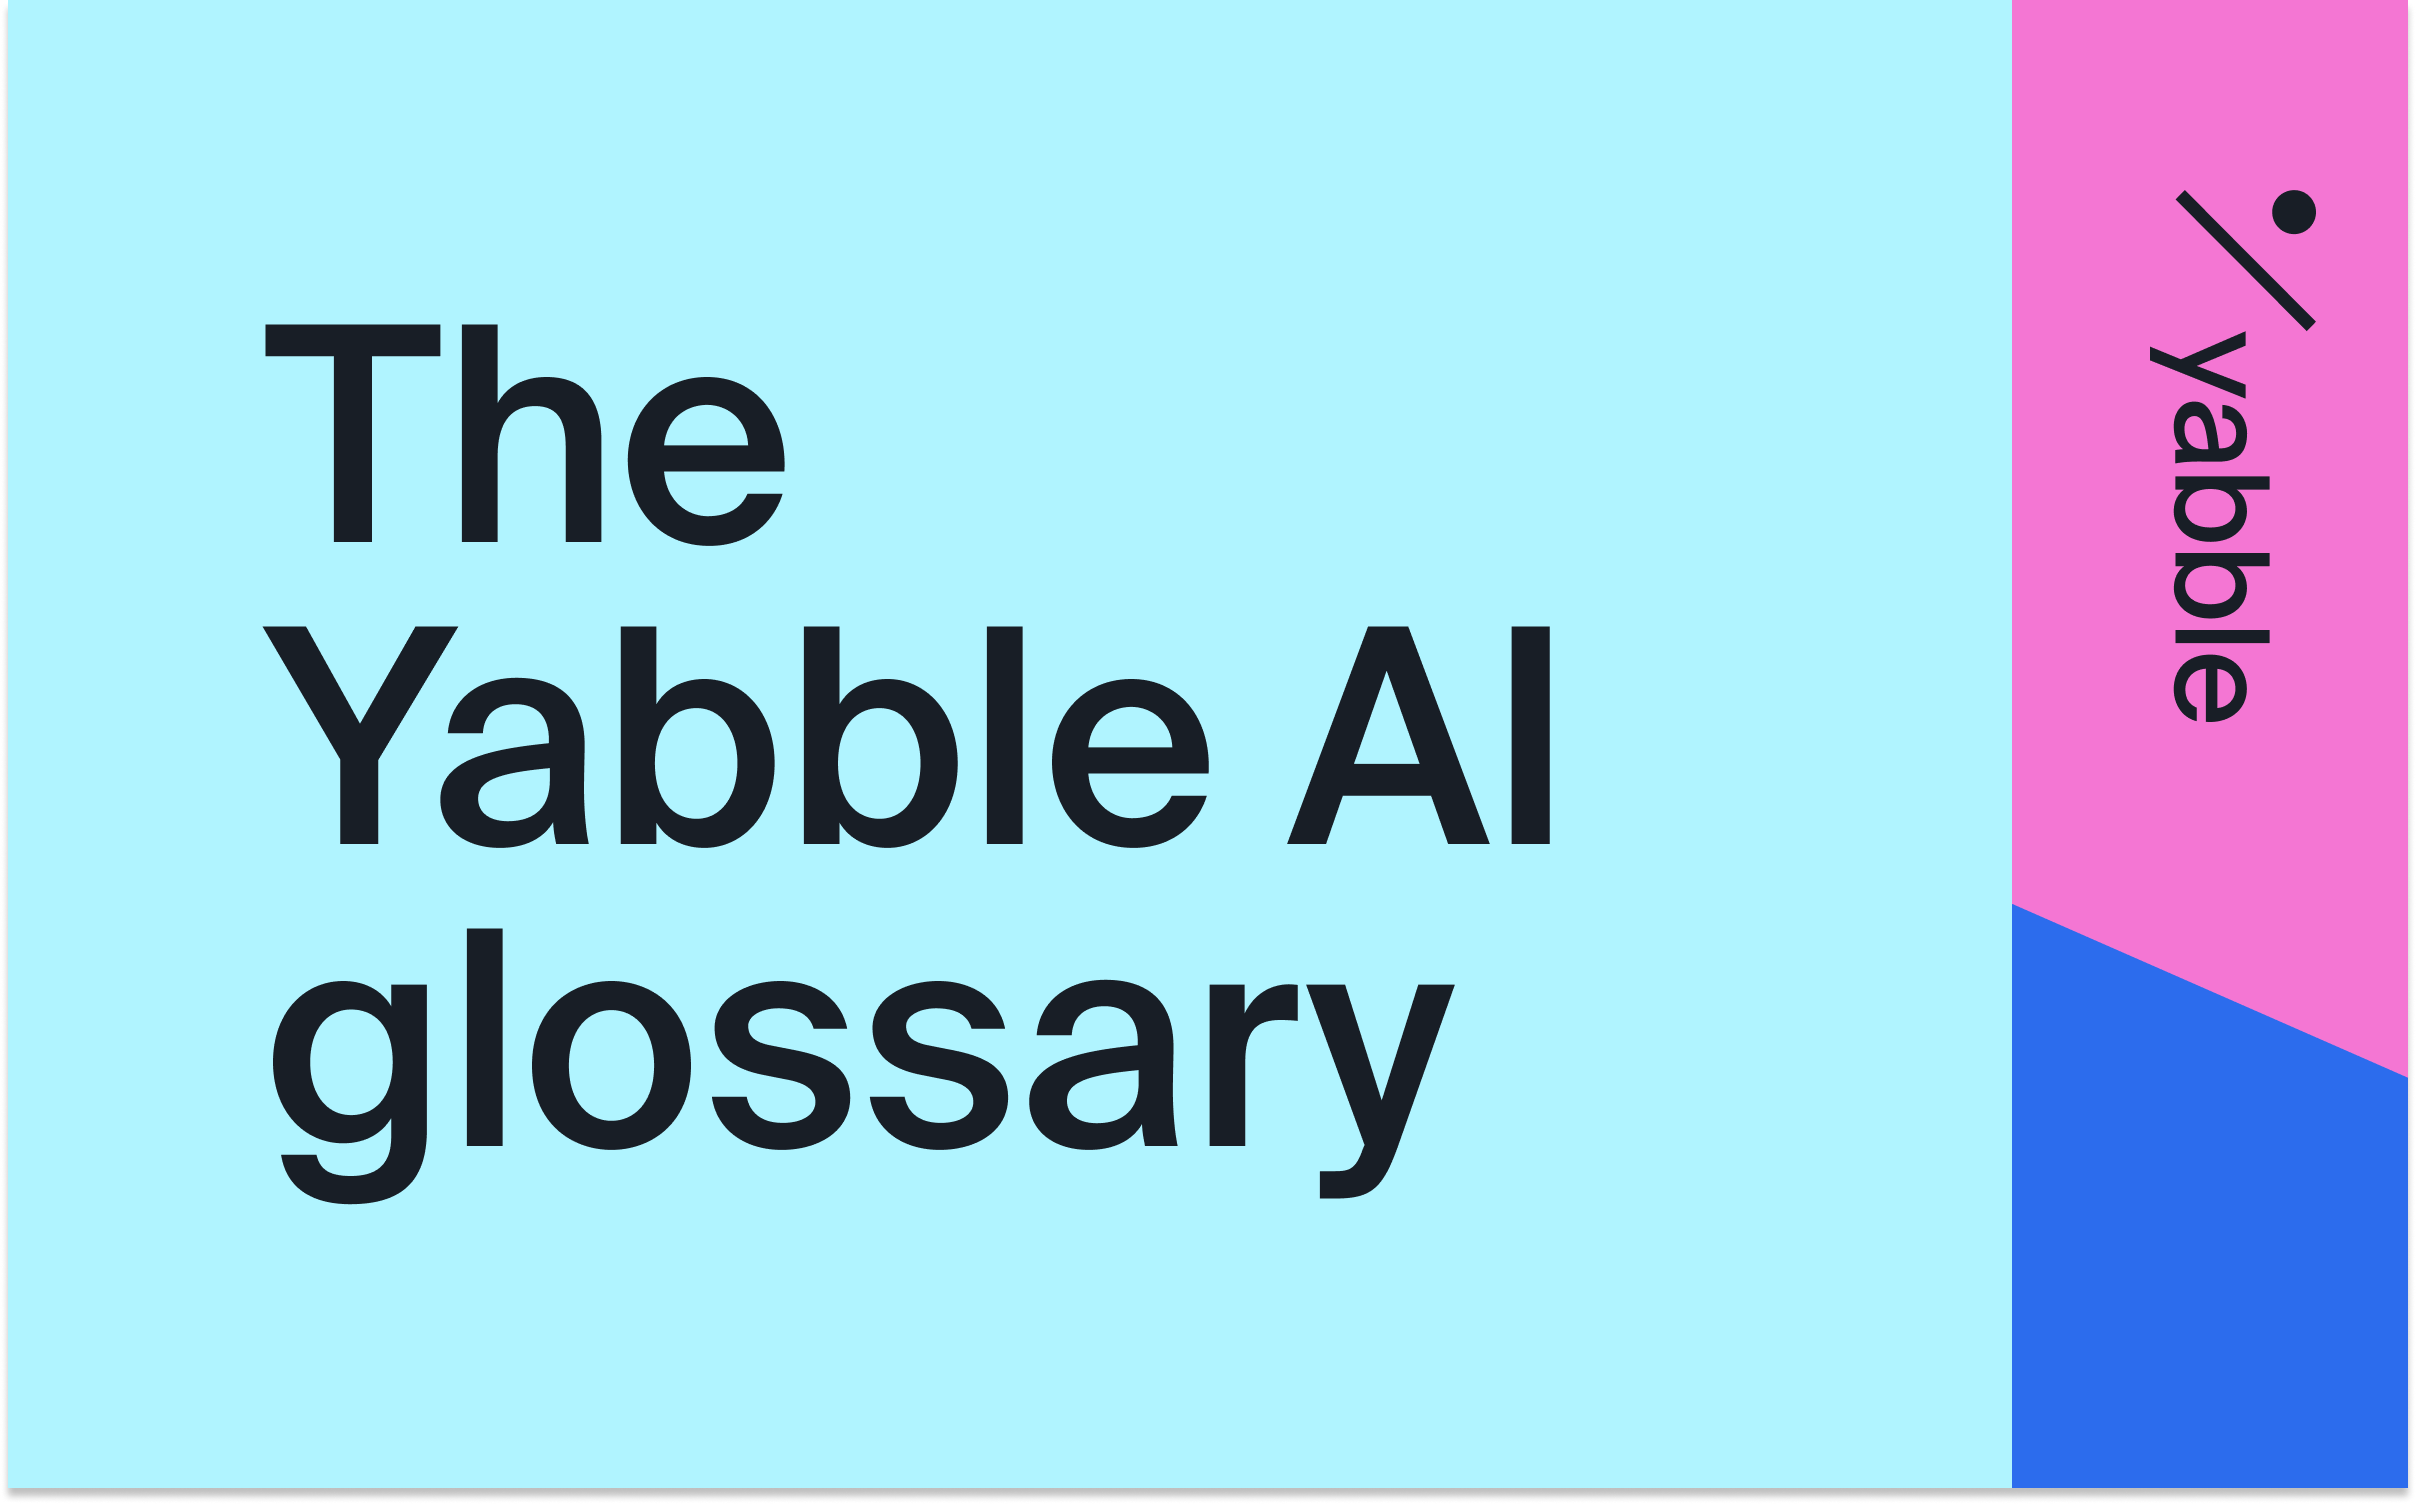 Yabble AI glossary blog image